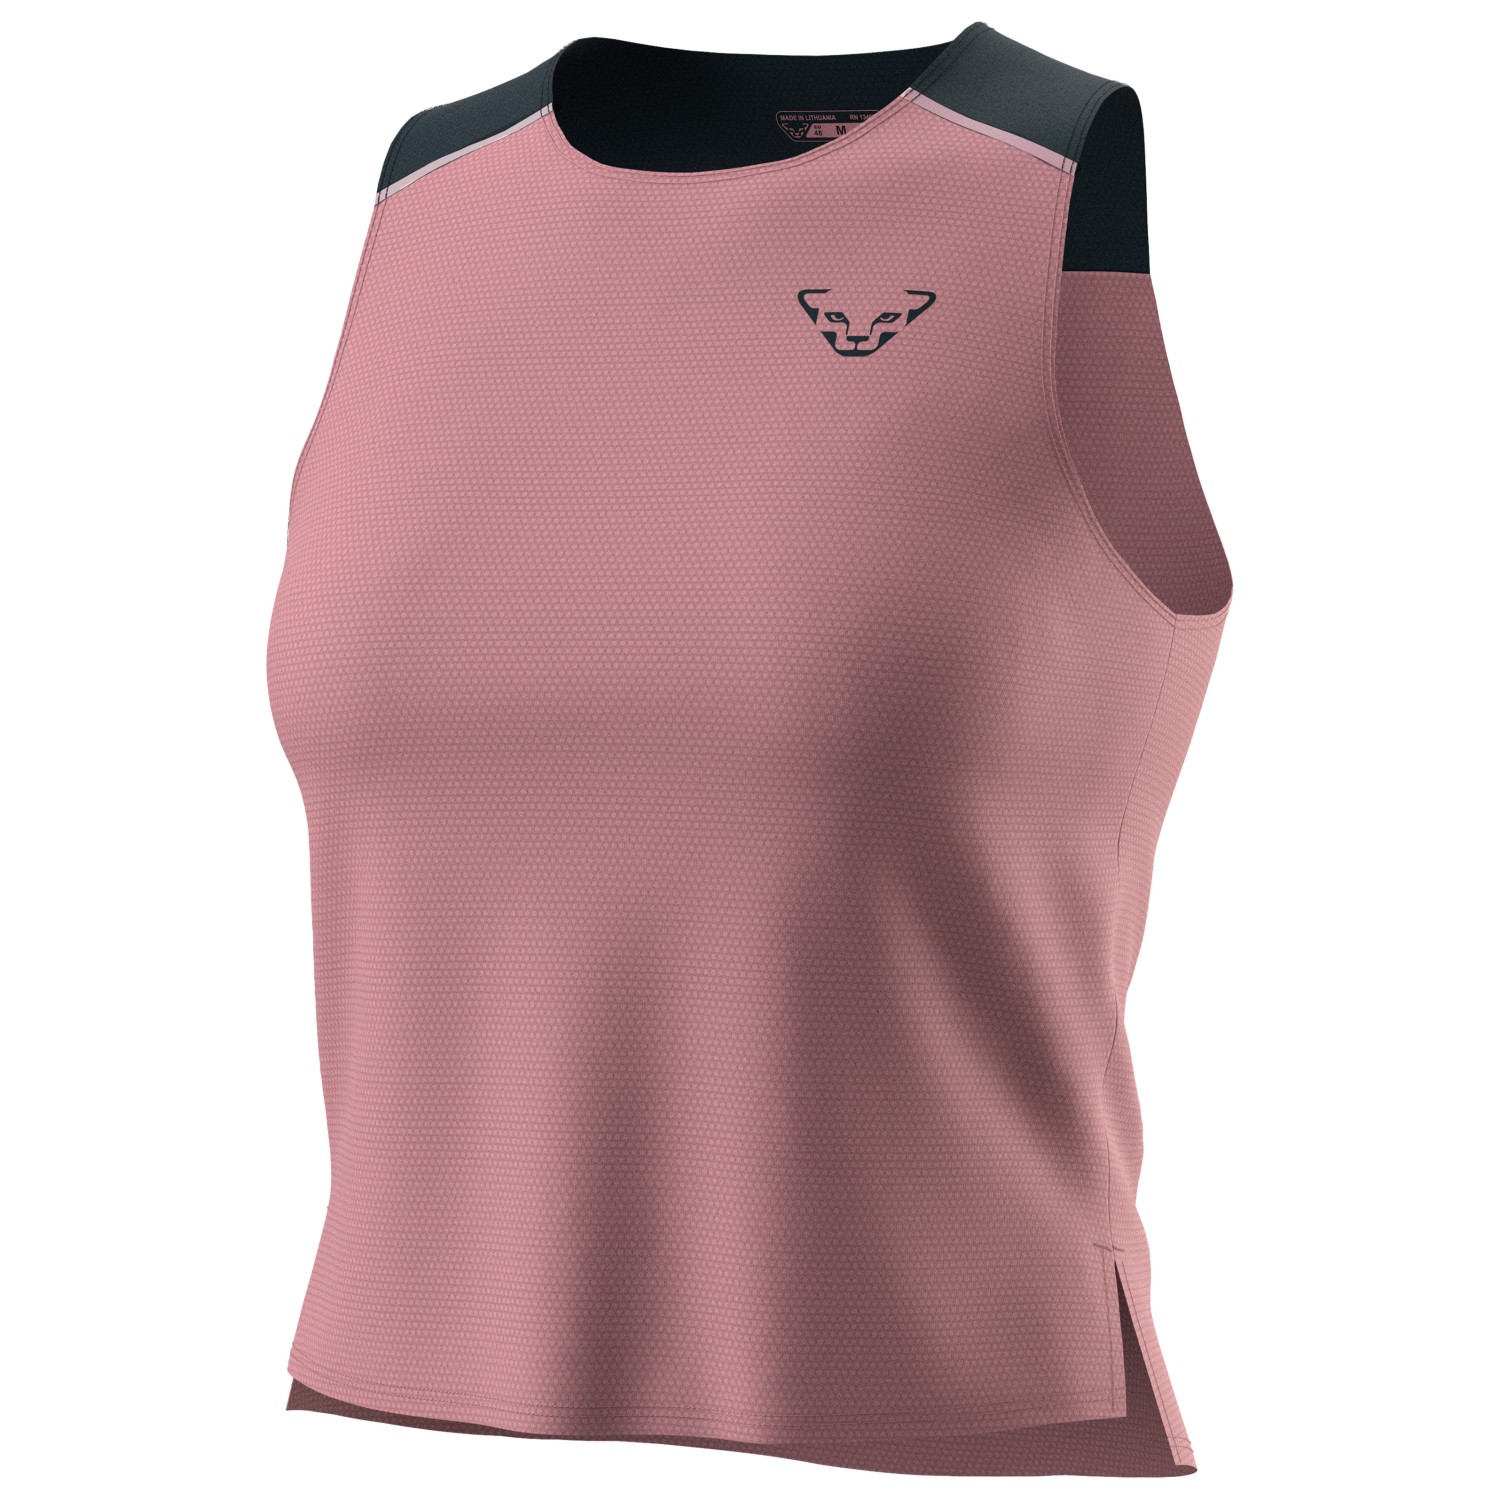 Функциональная рубашка Dynafit Women's Sky Crop Top, цвет Mokarosa/3010